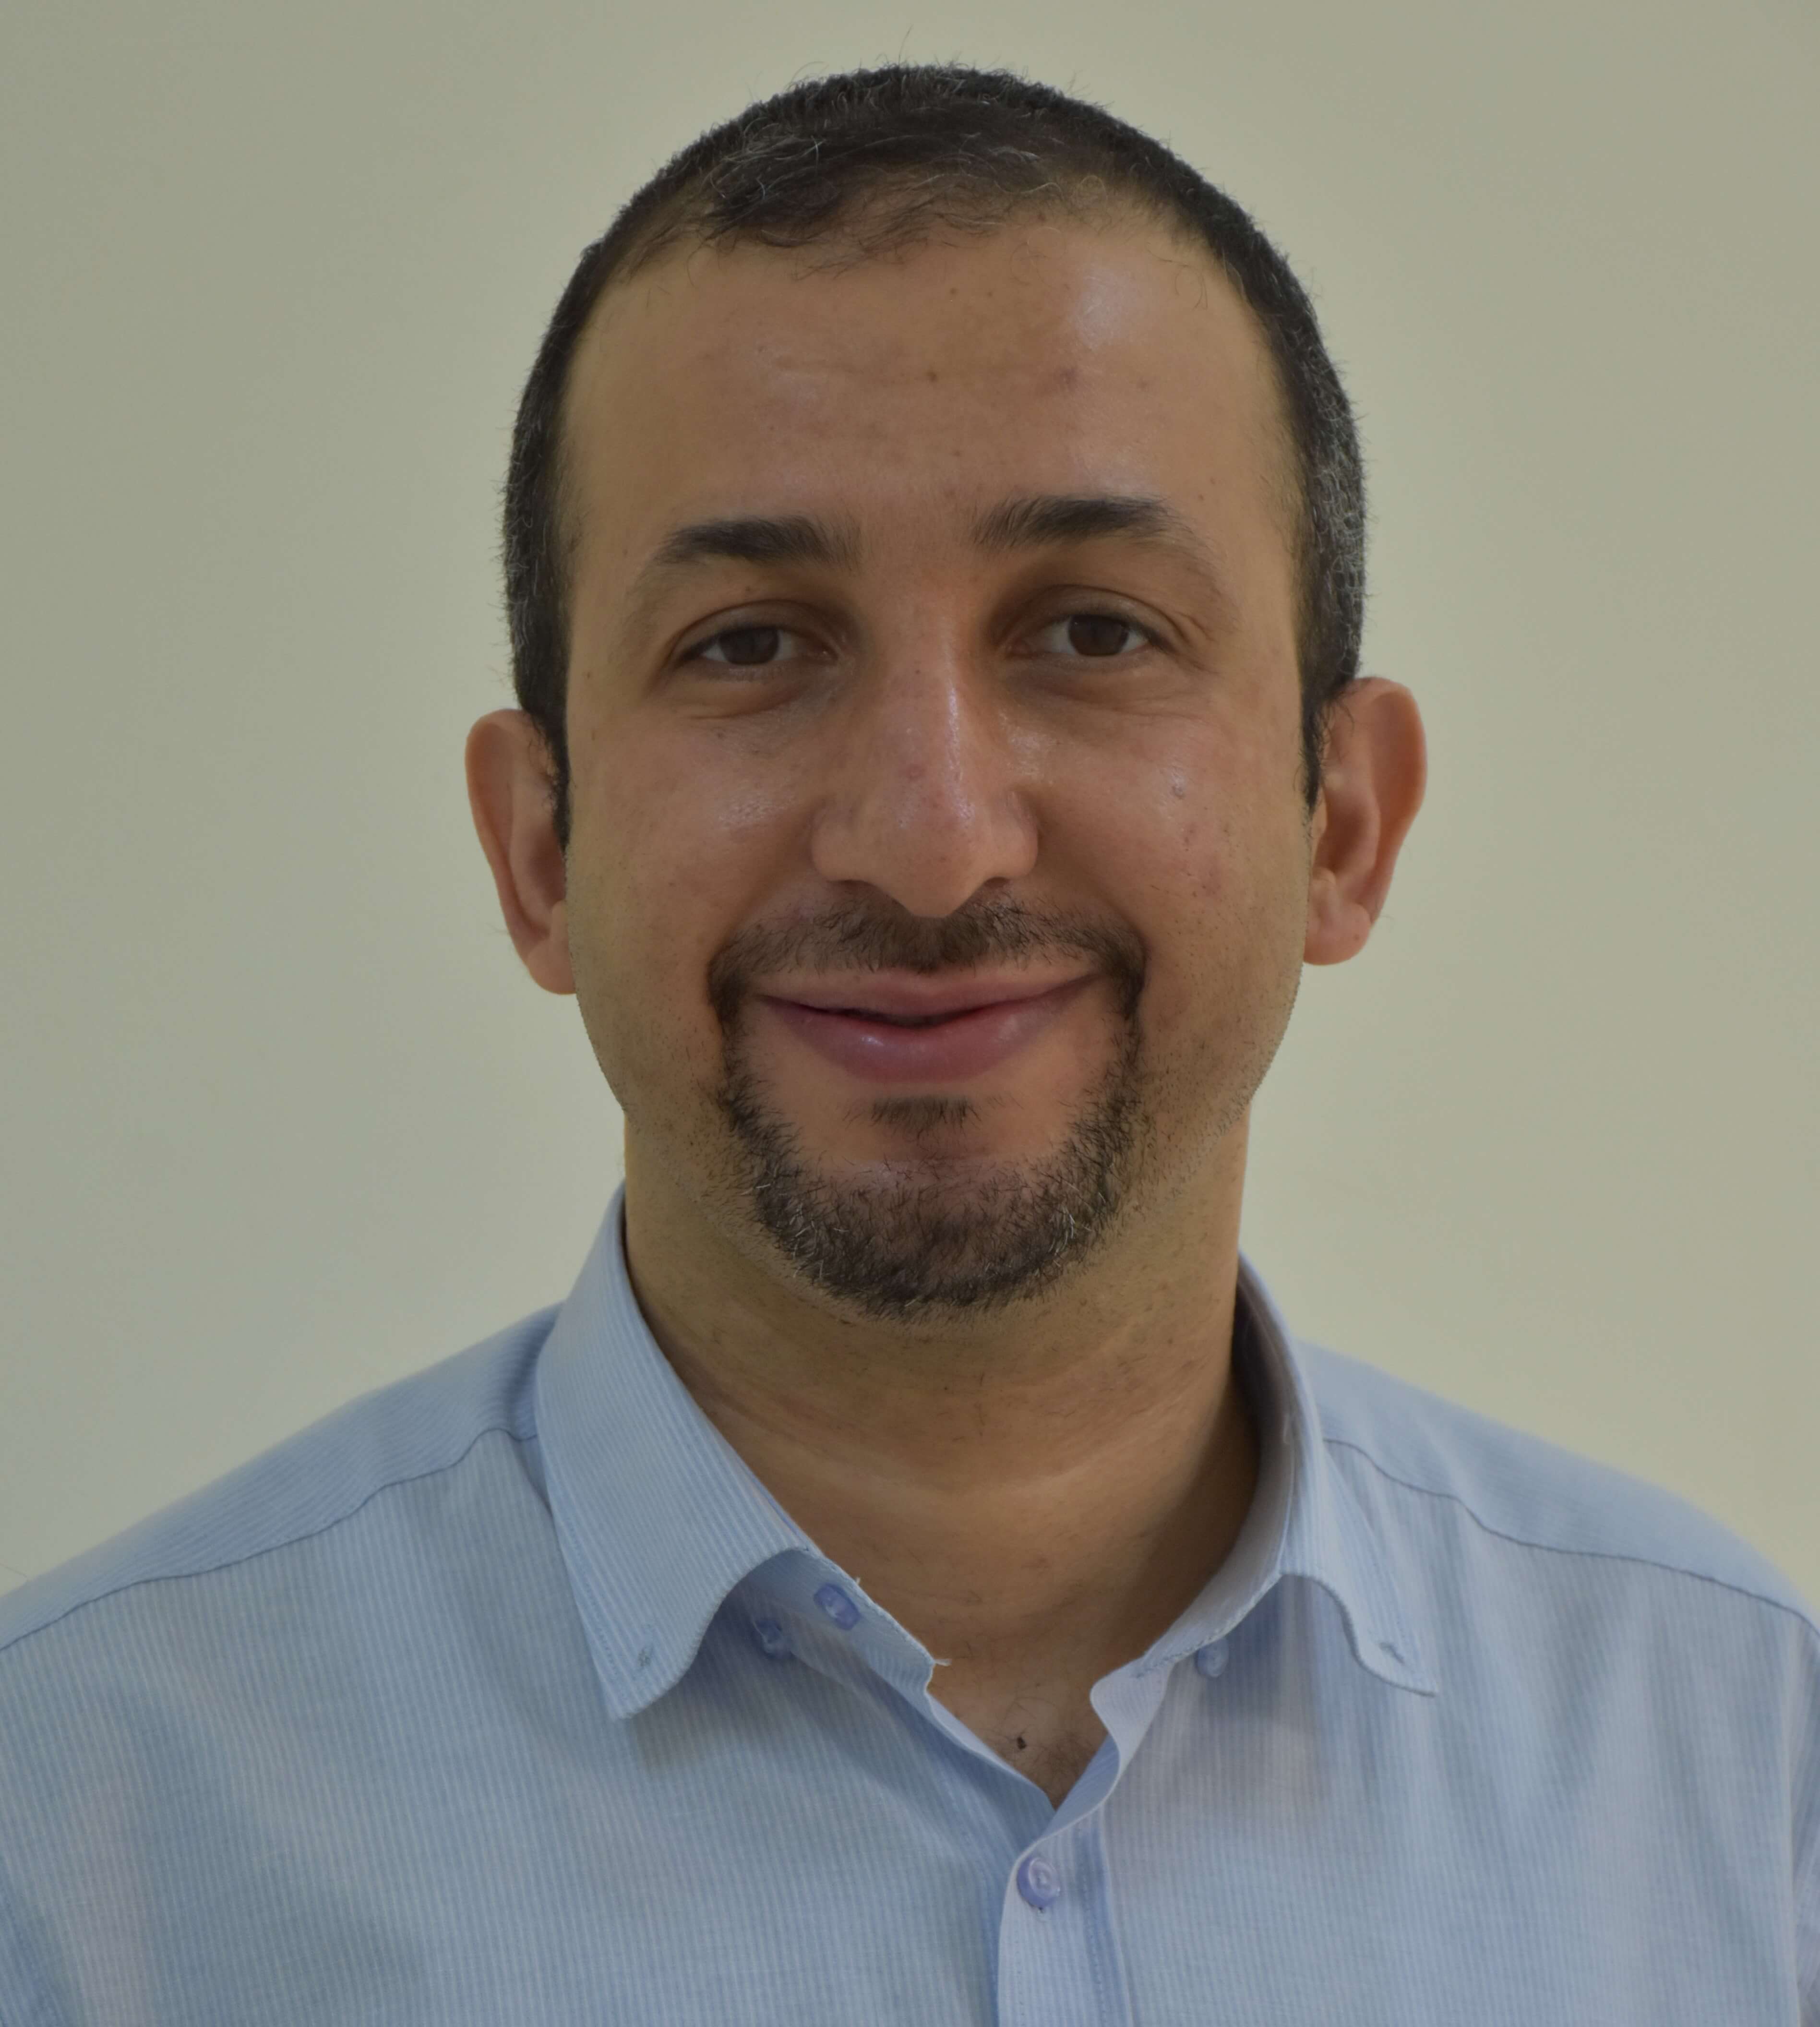 Ali Al-Timemy, PhD